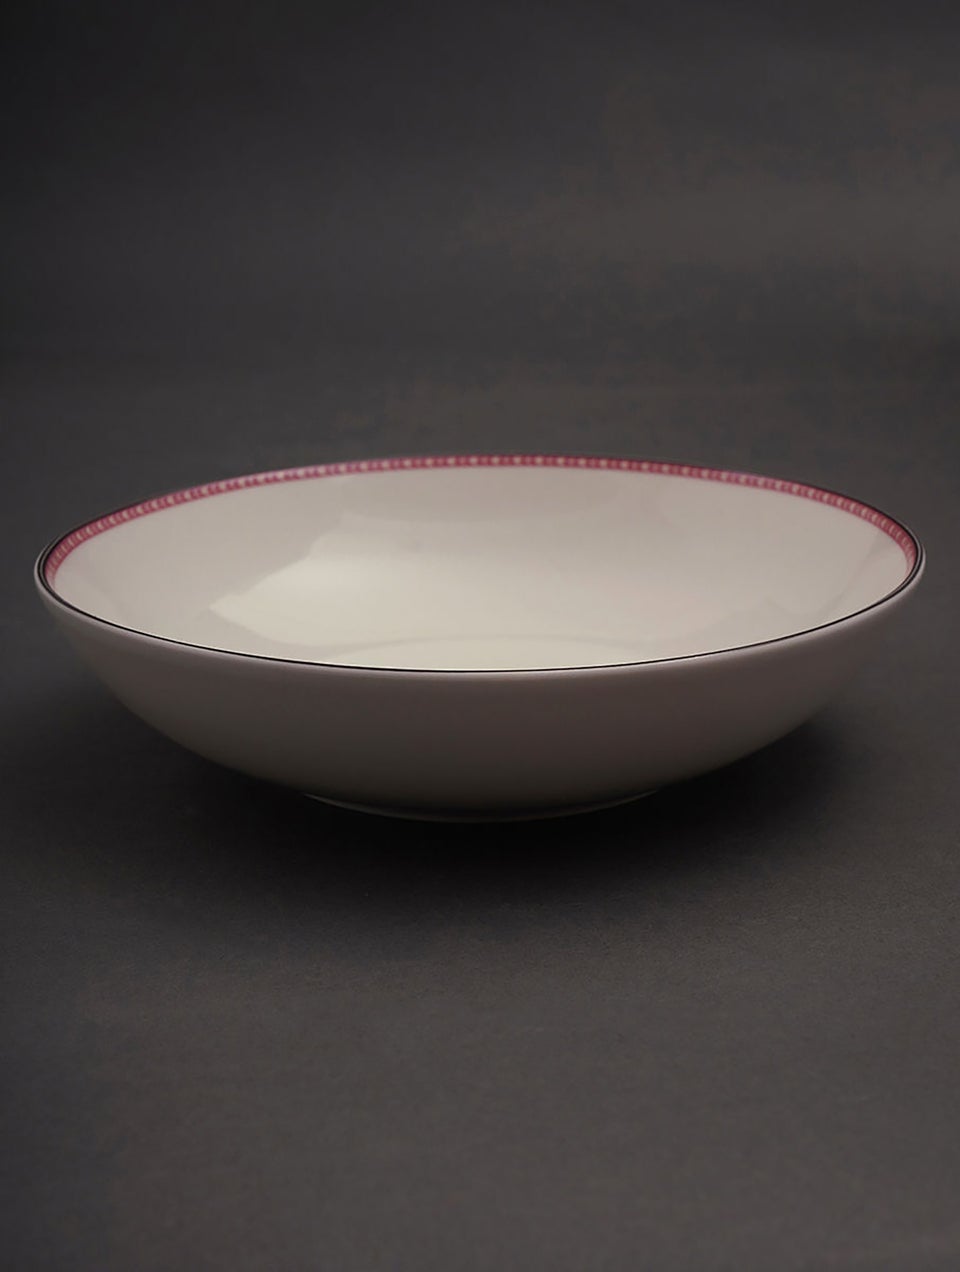 Mughal Inspired Porcelain Serving Bowl